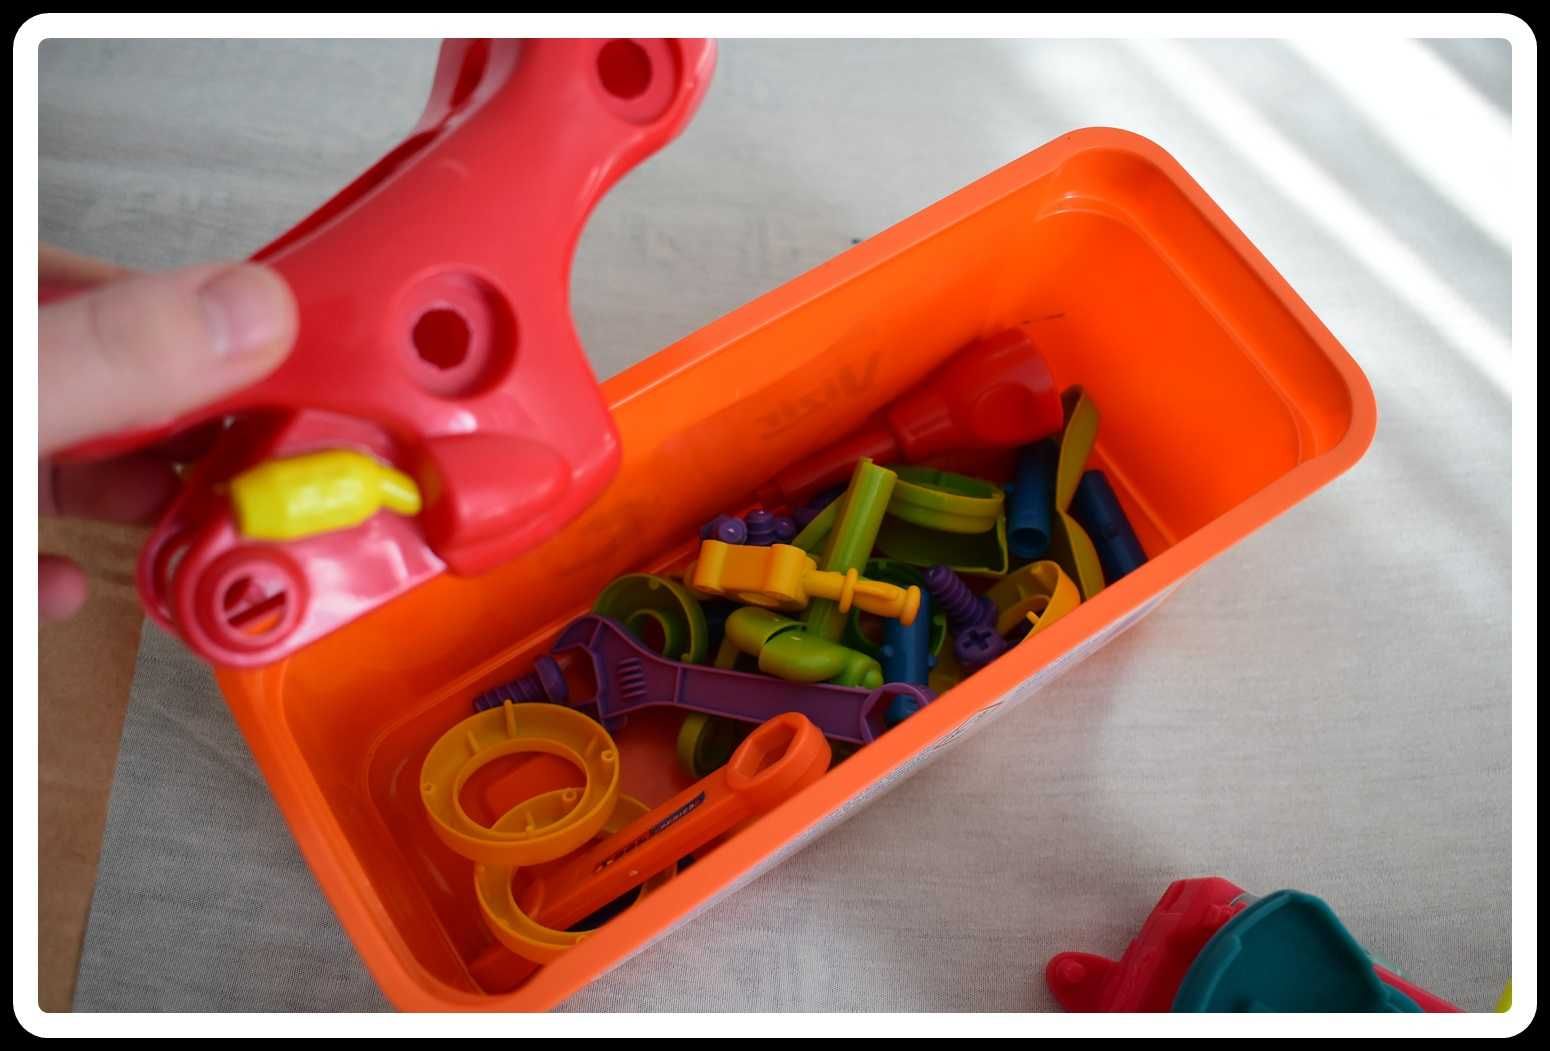 Mix zabawek dla chłopca przedszkolnego zestaw różne